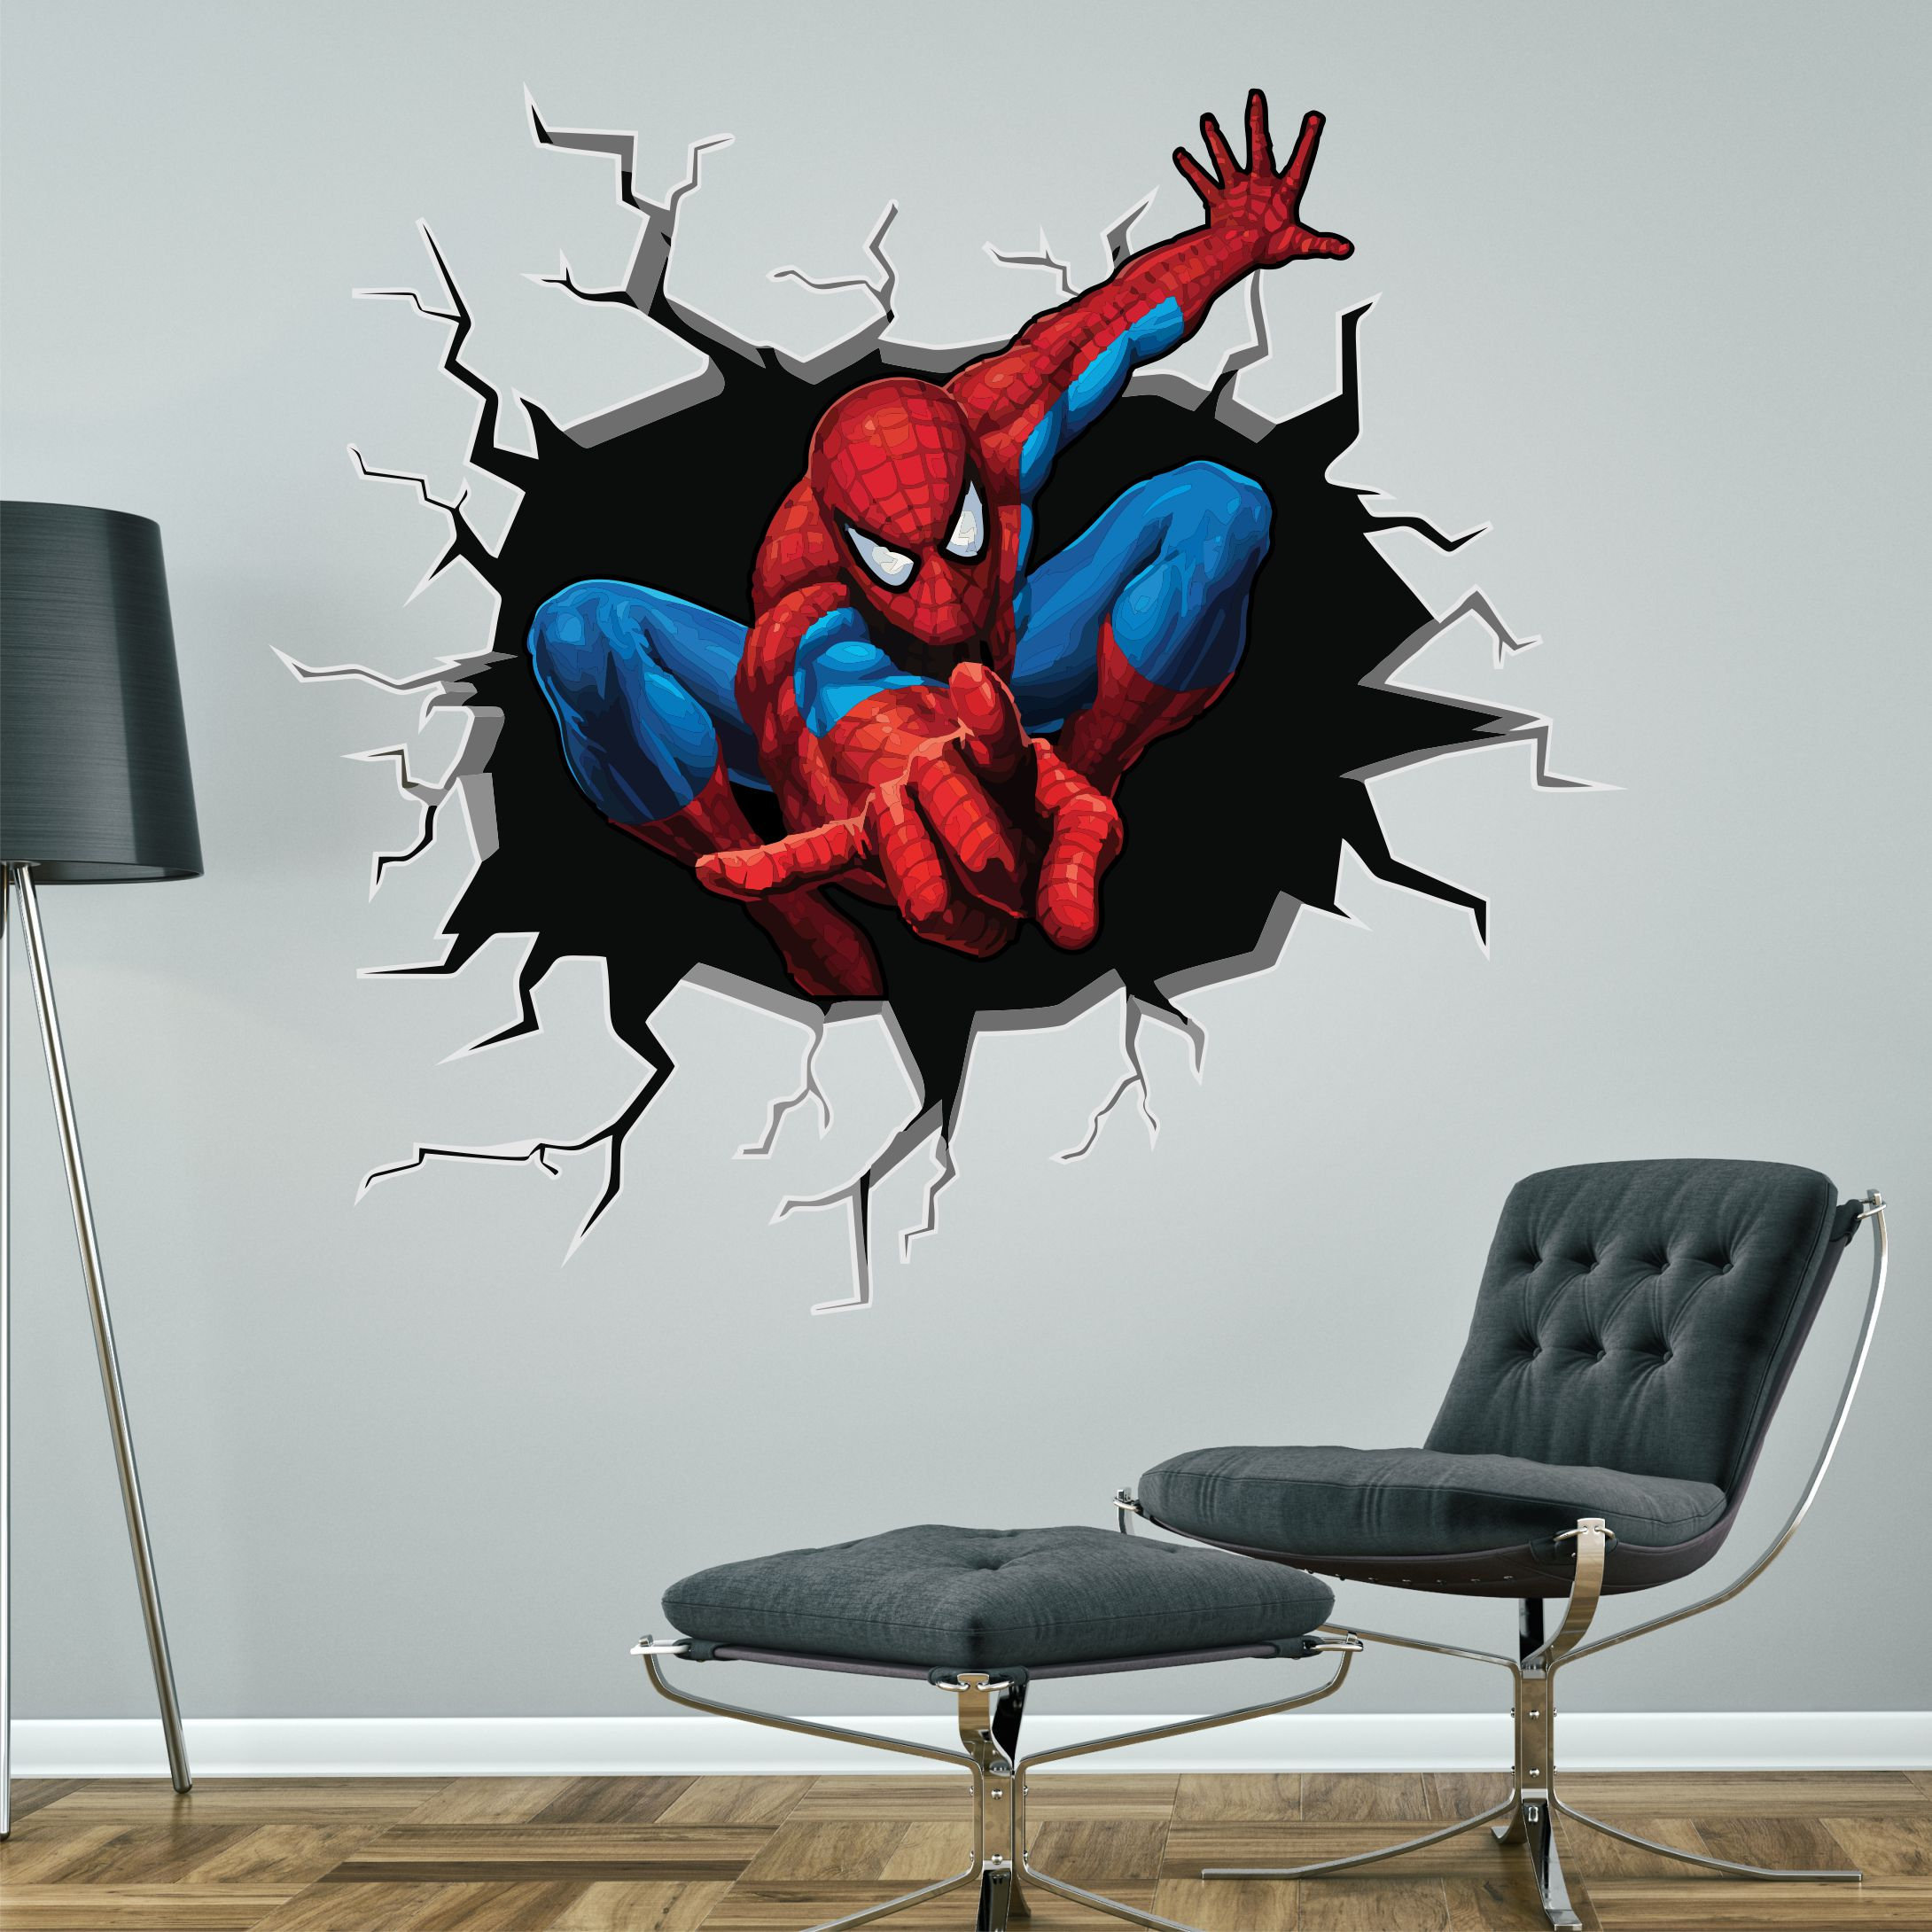 Cartoon Spider Man Broken Wall Stickers 3D Decals Wallpaper Mural Art Decor Home